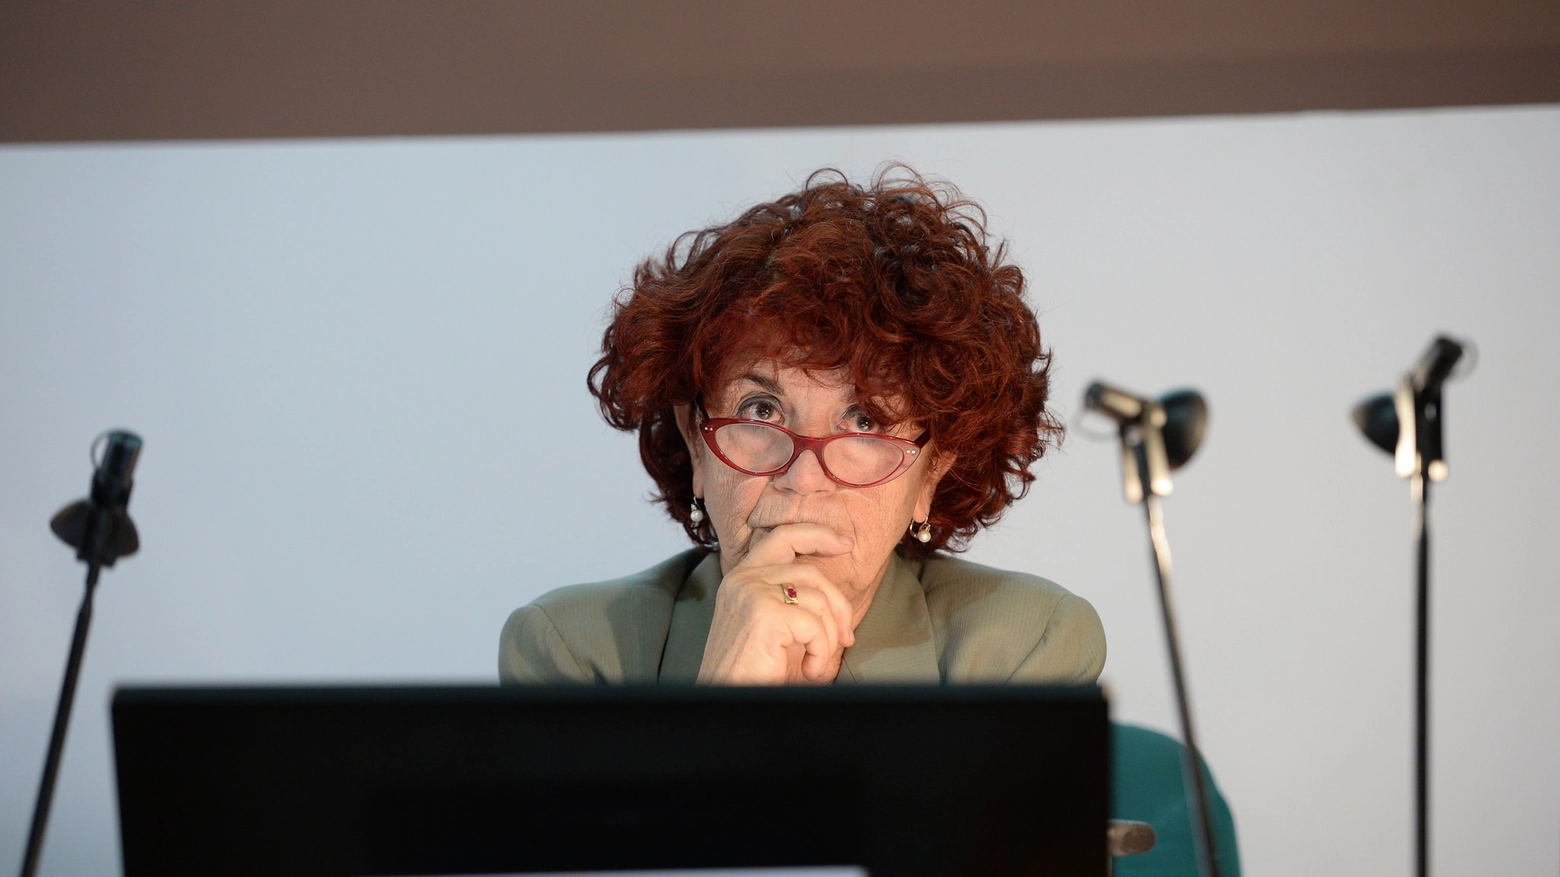 La ministra dell'Istruzione Valeria Fedeli